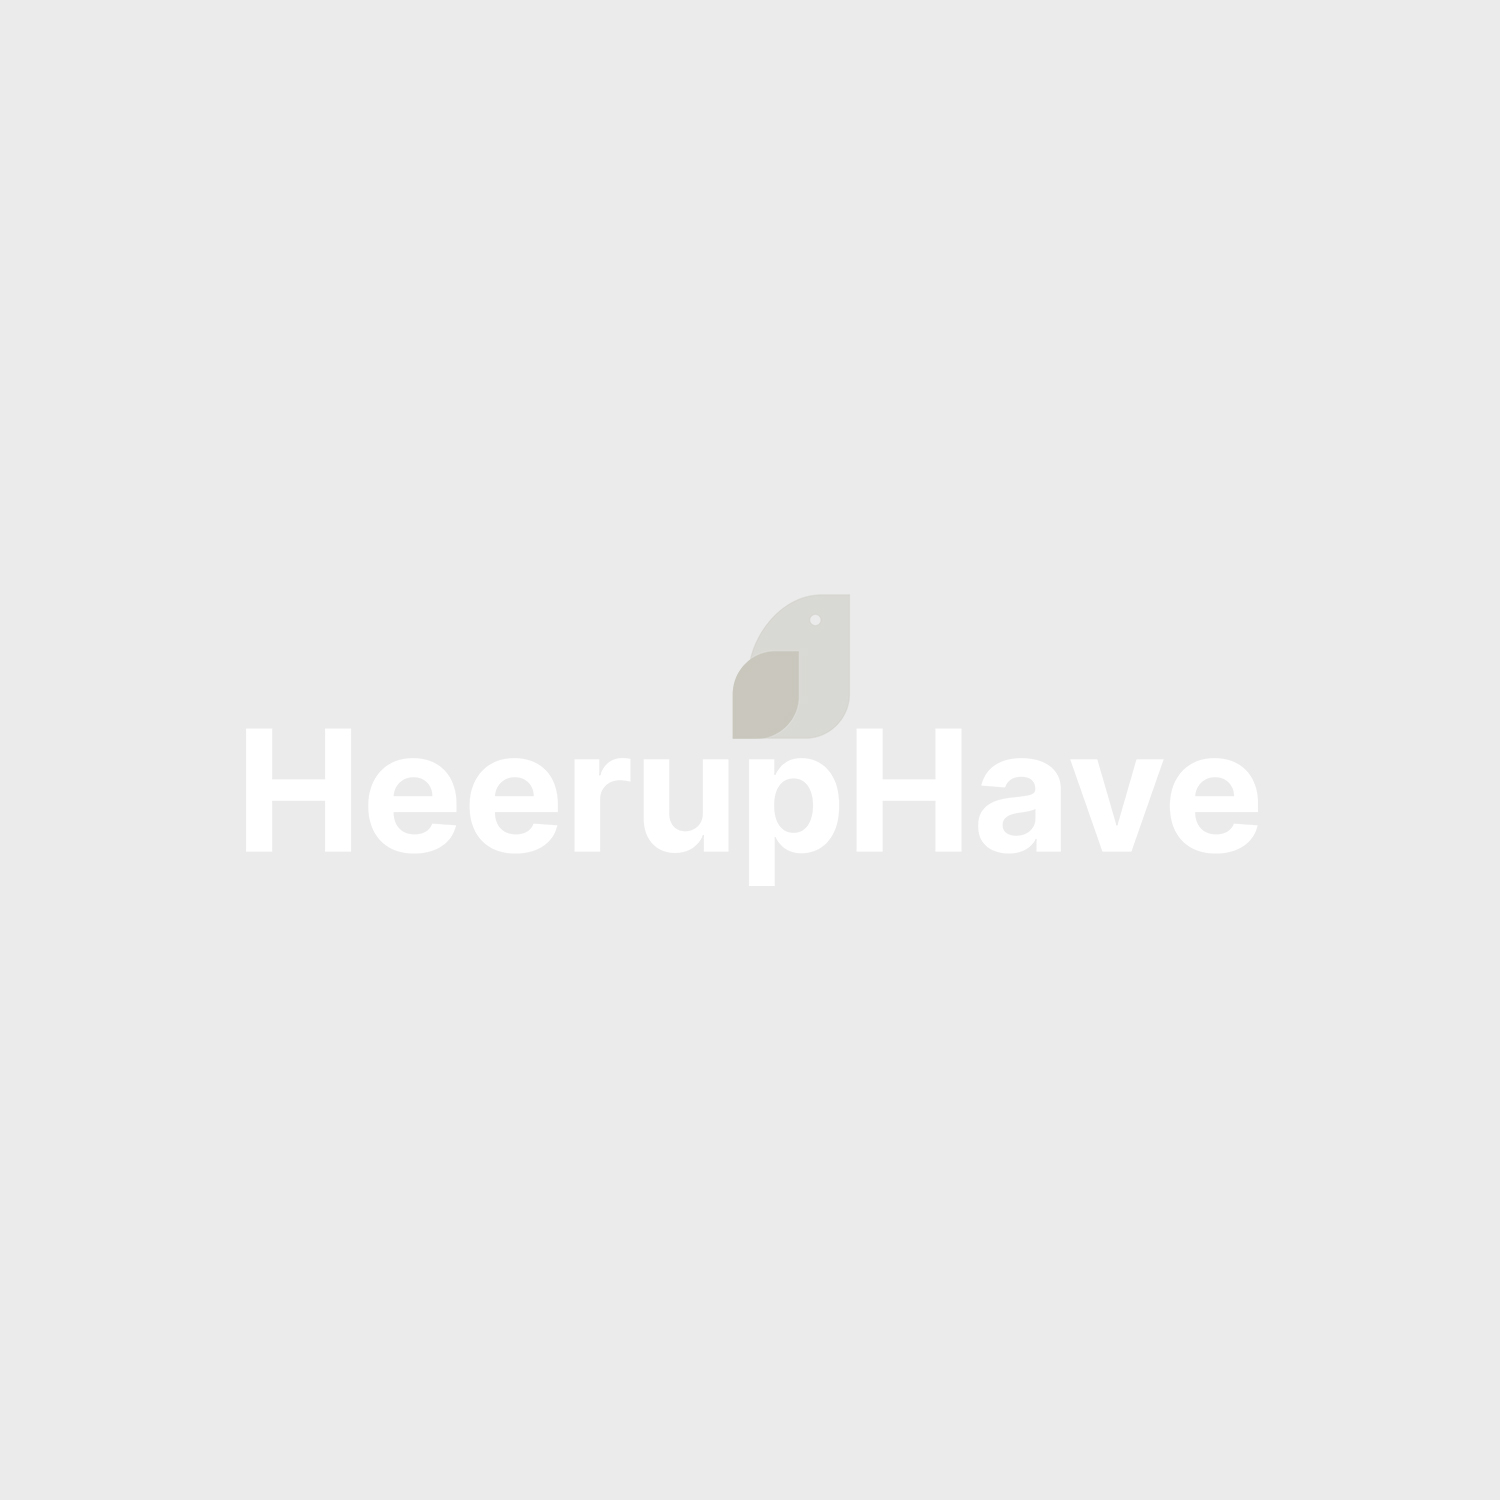 Heeruphave Website